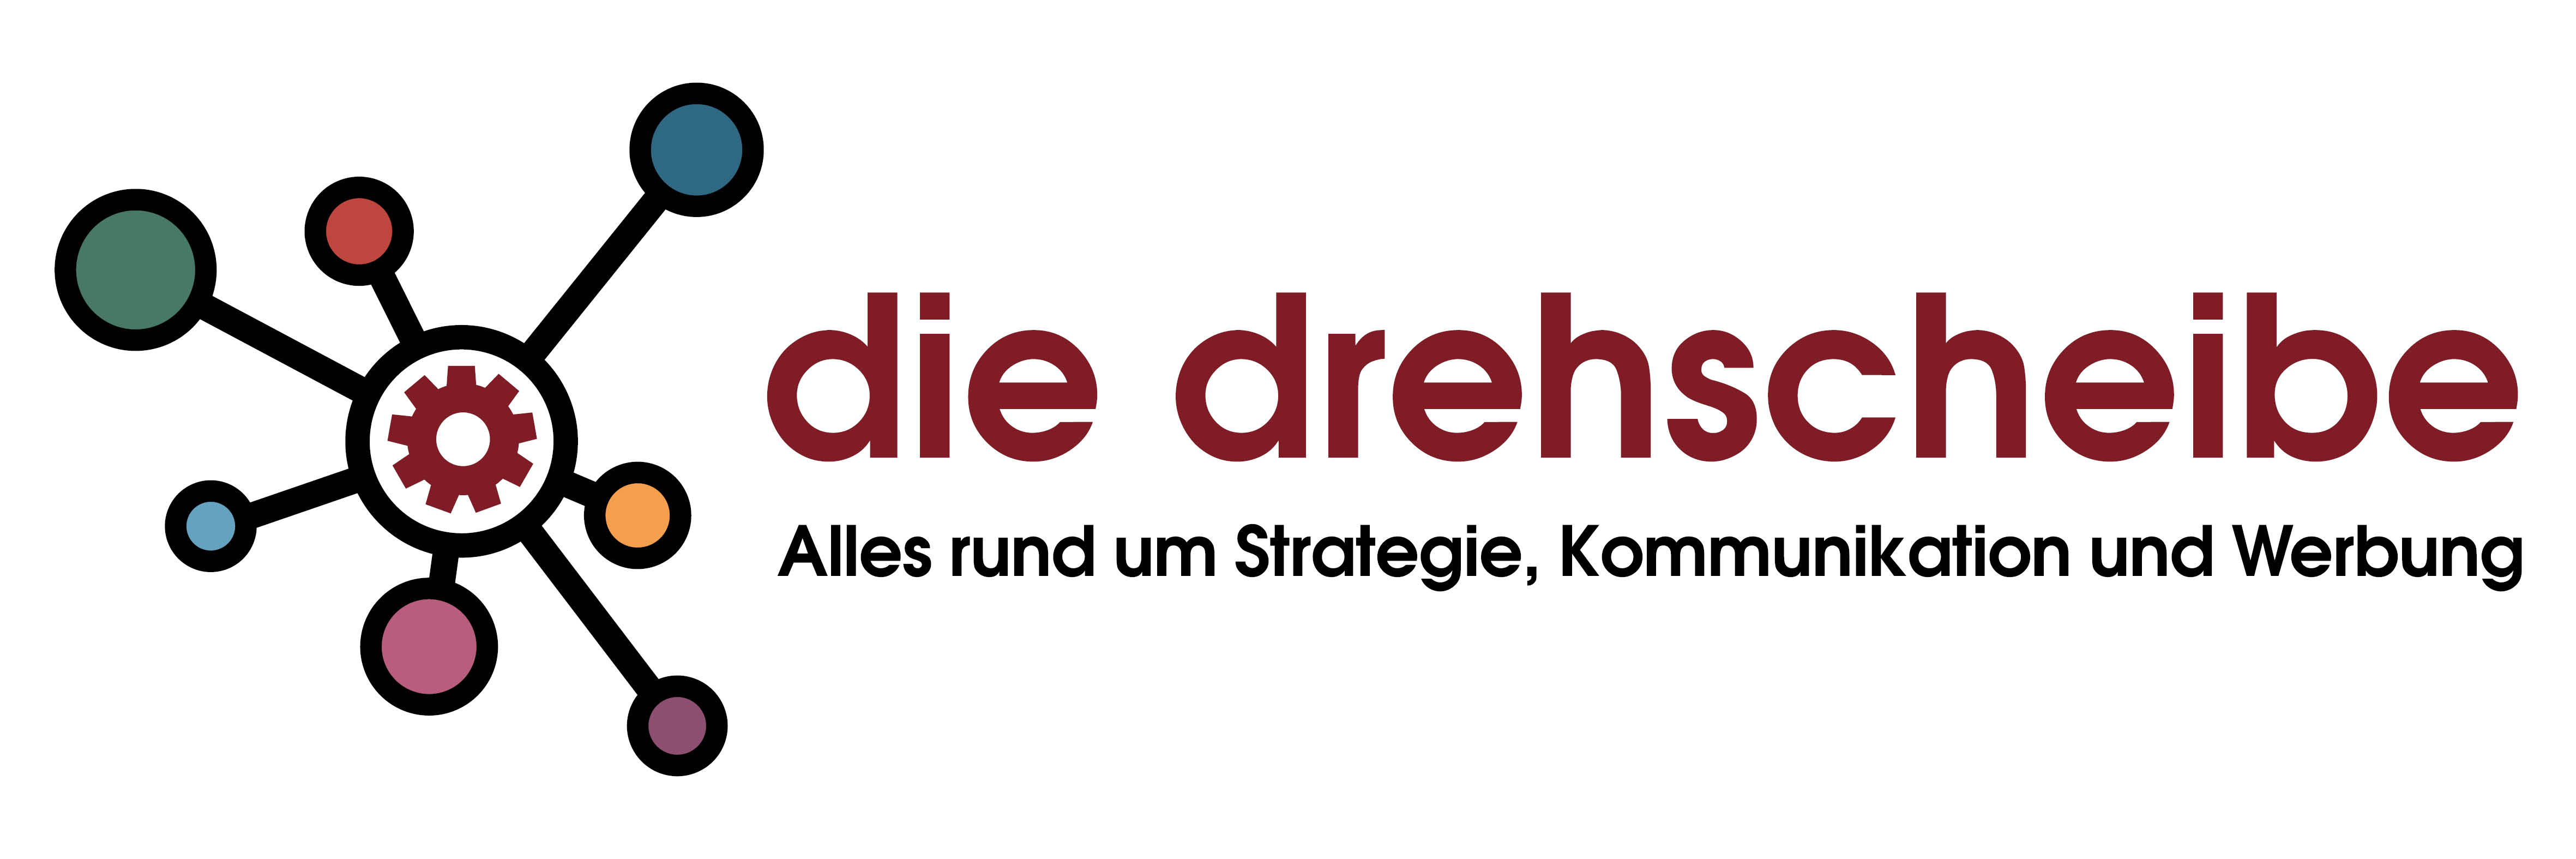 die_drehscheibe_logo.jpg